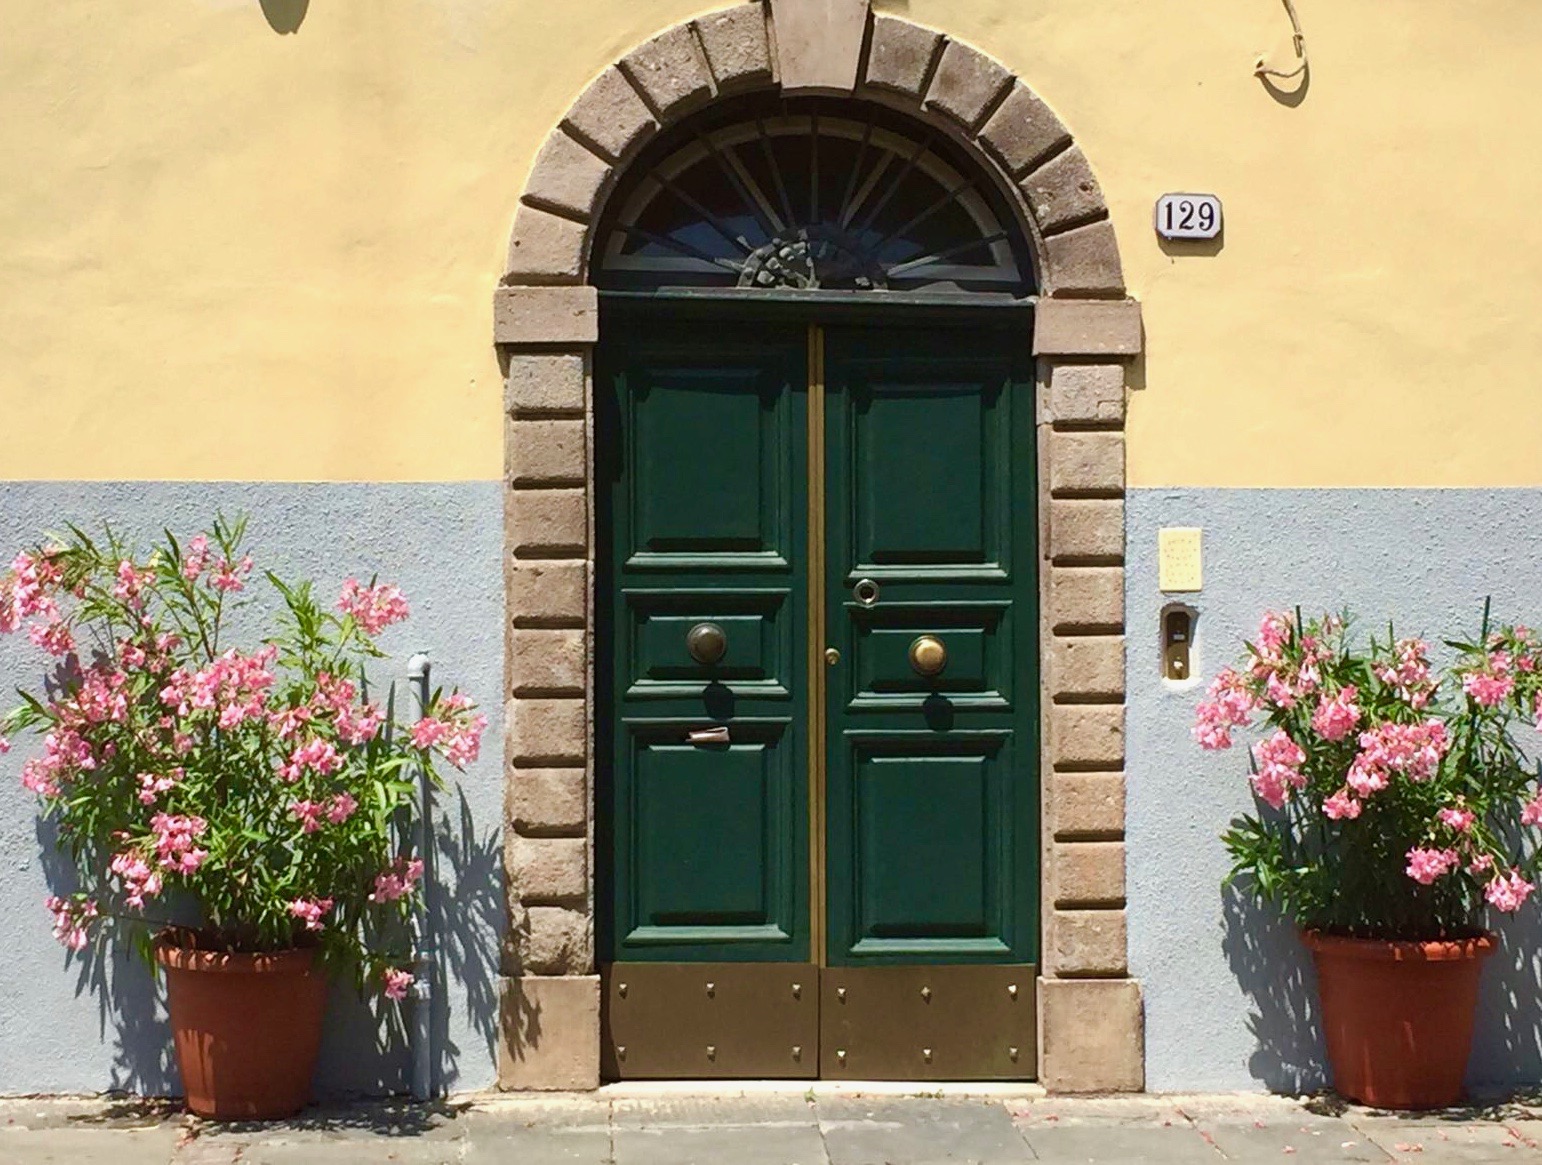 Italian residency